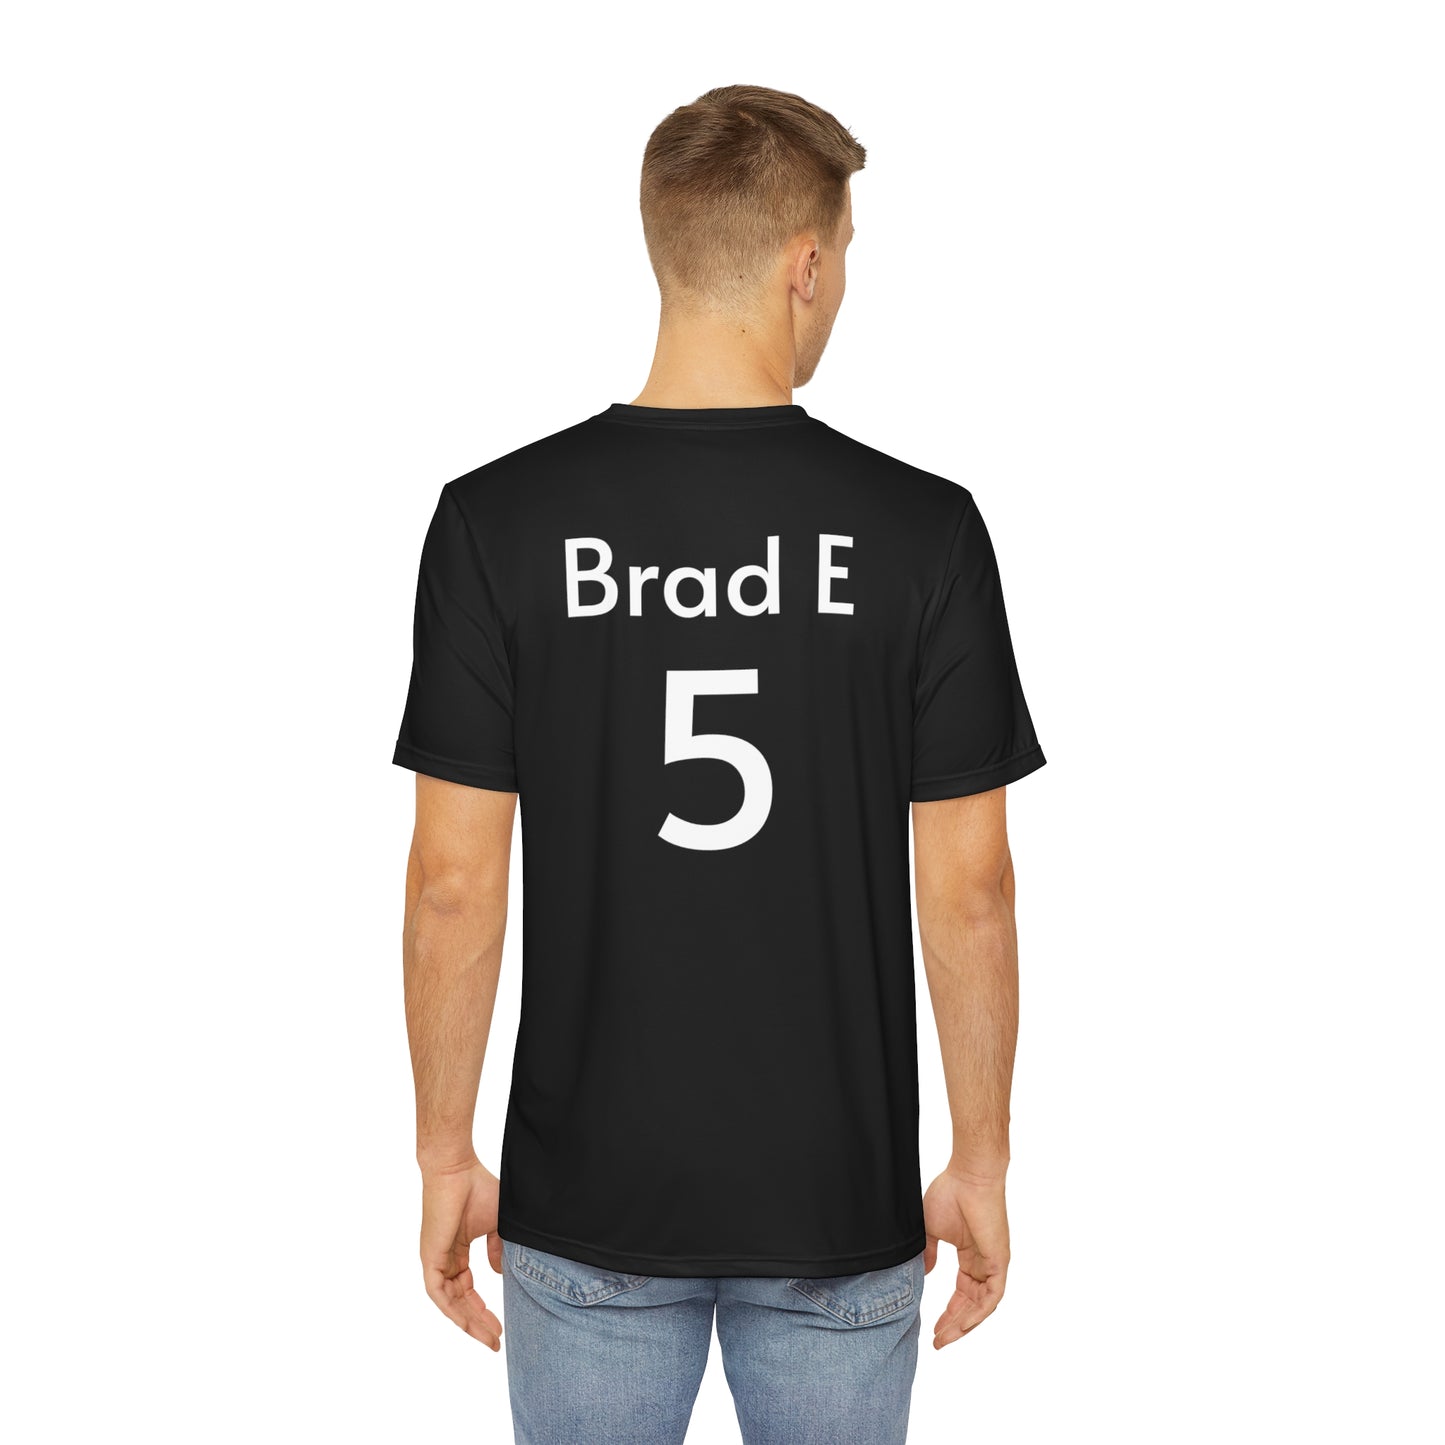 Brad E Team shirt